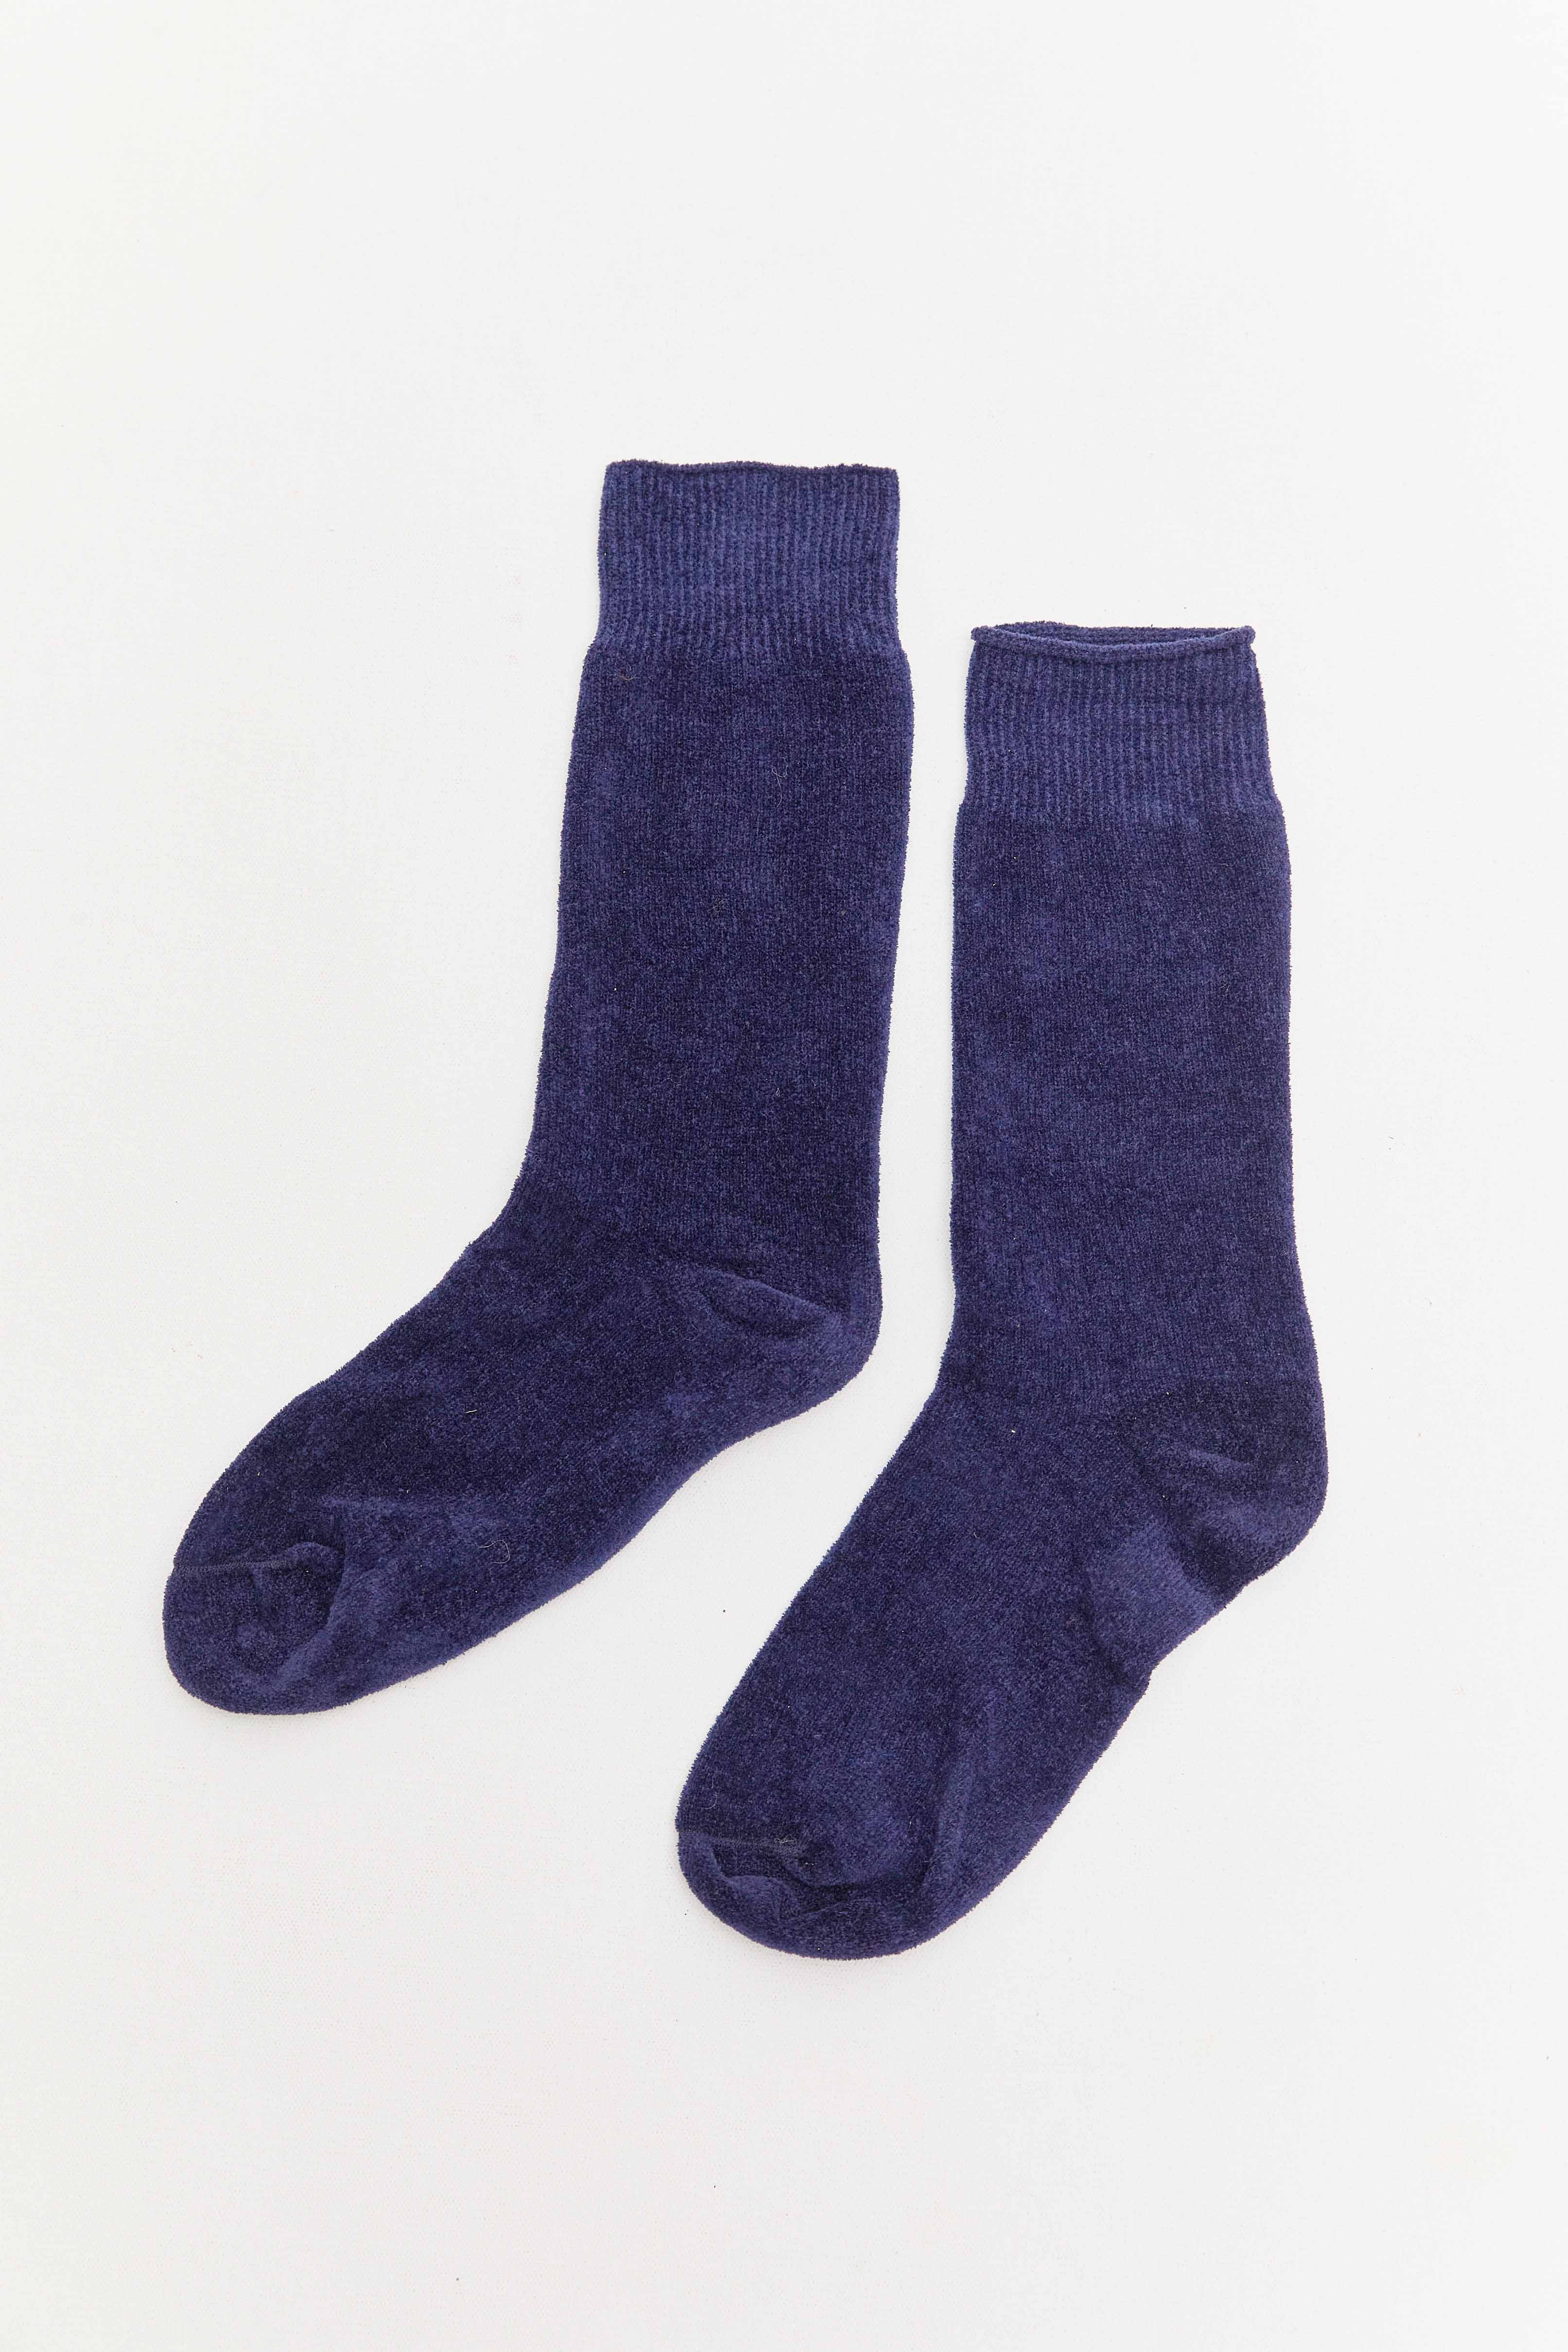 Velvet socks by Maria La Rosa.